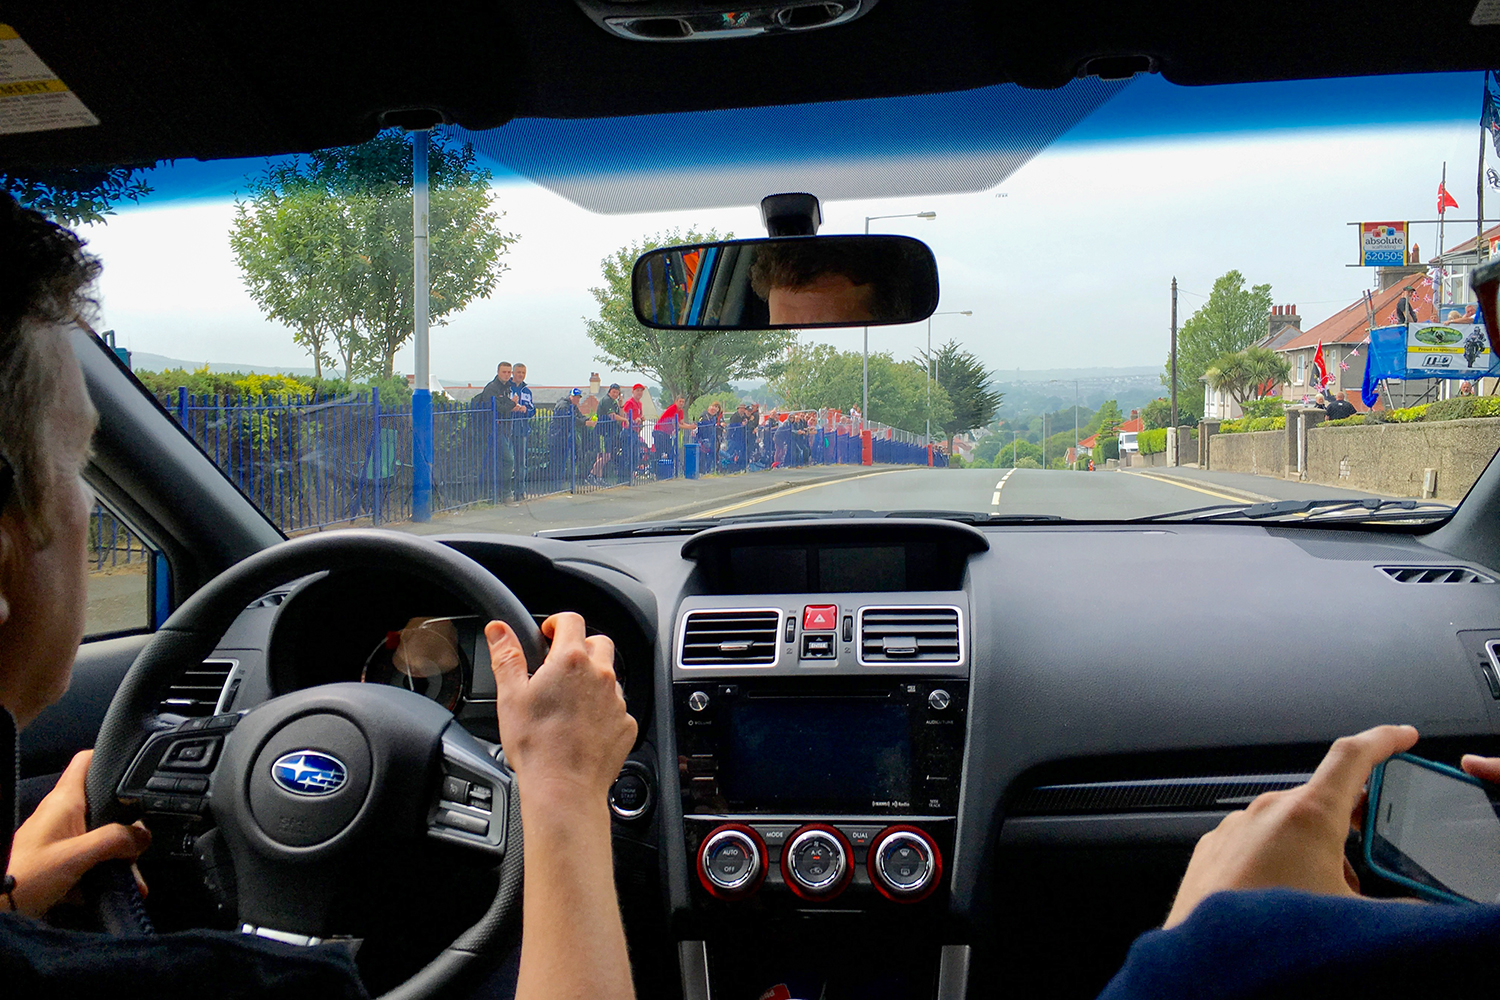 Subaru The Isle of Man TT